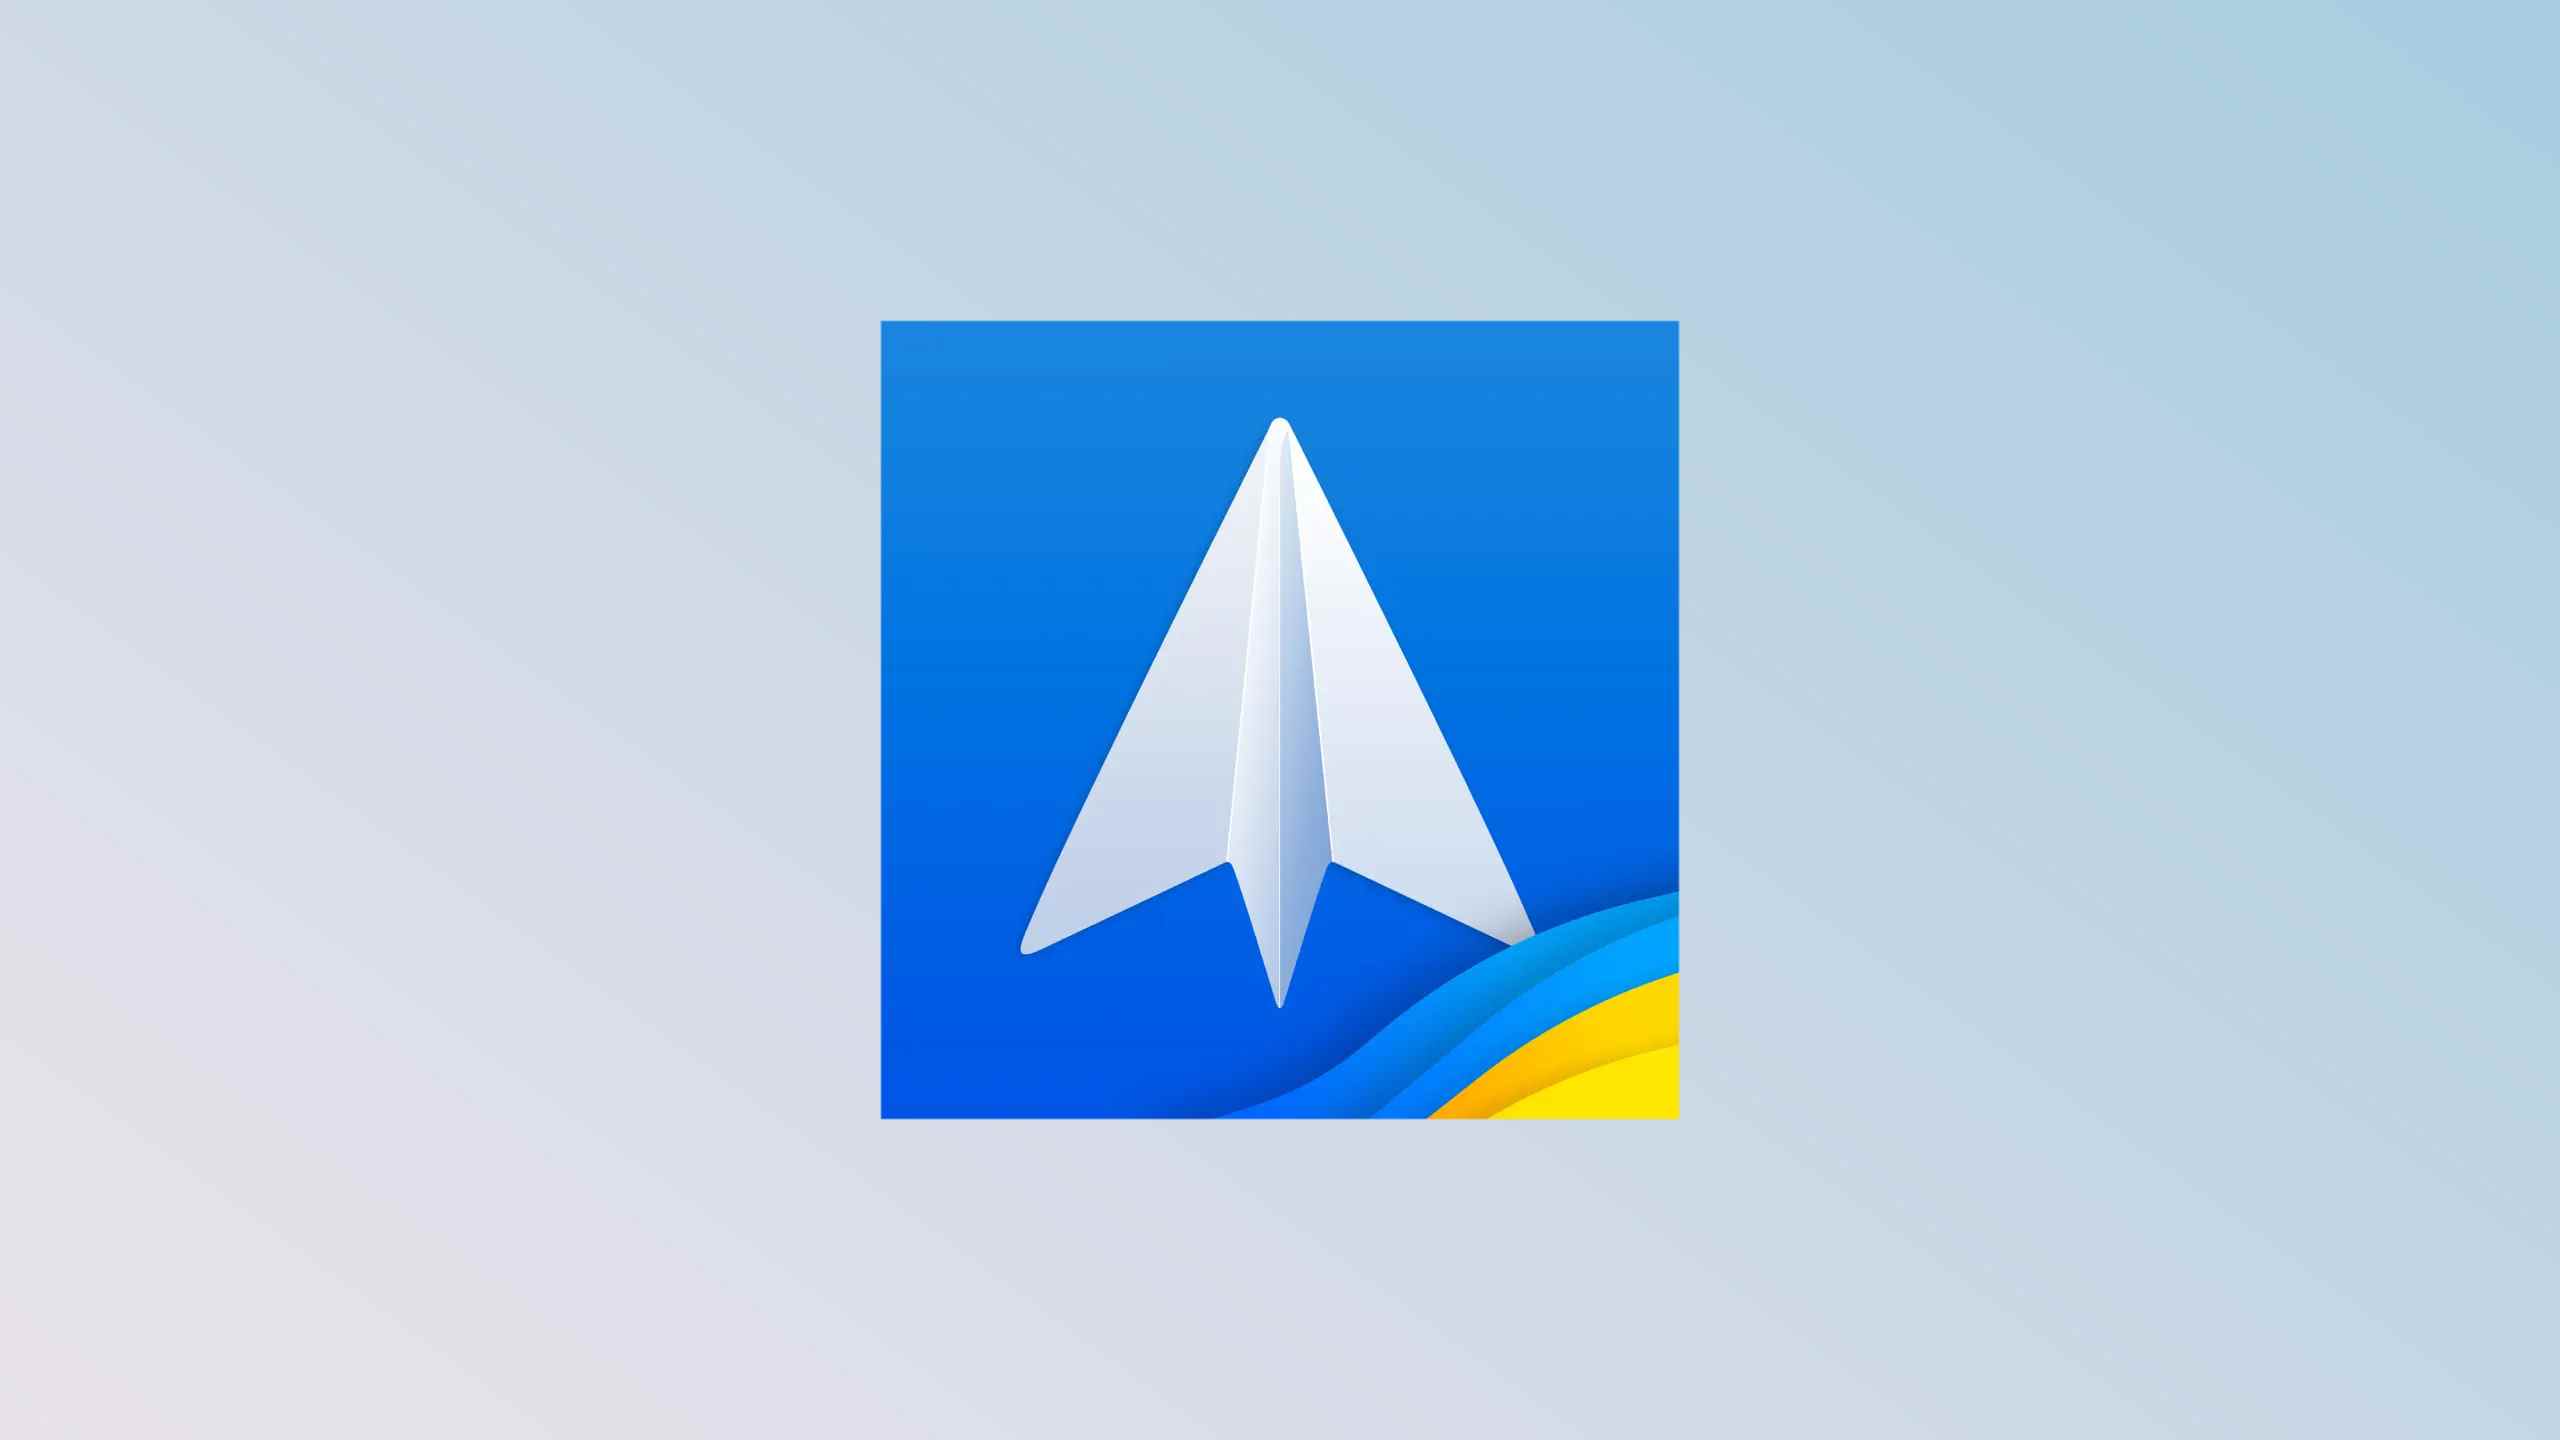 Le logo Spark sur fond bleu pâle